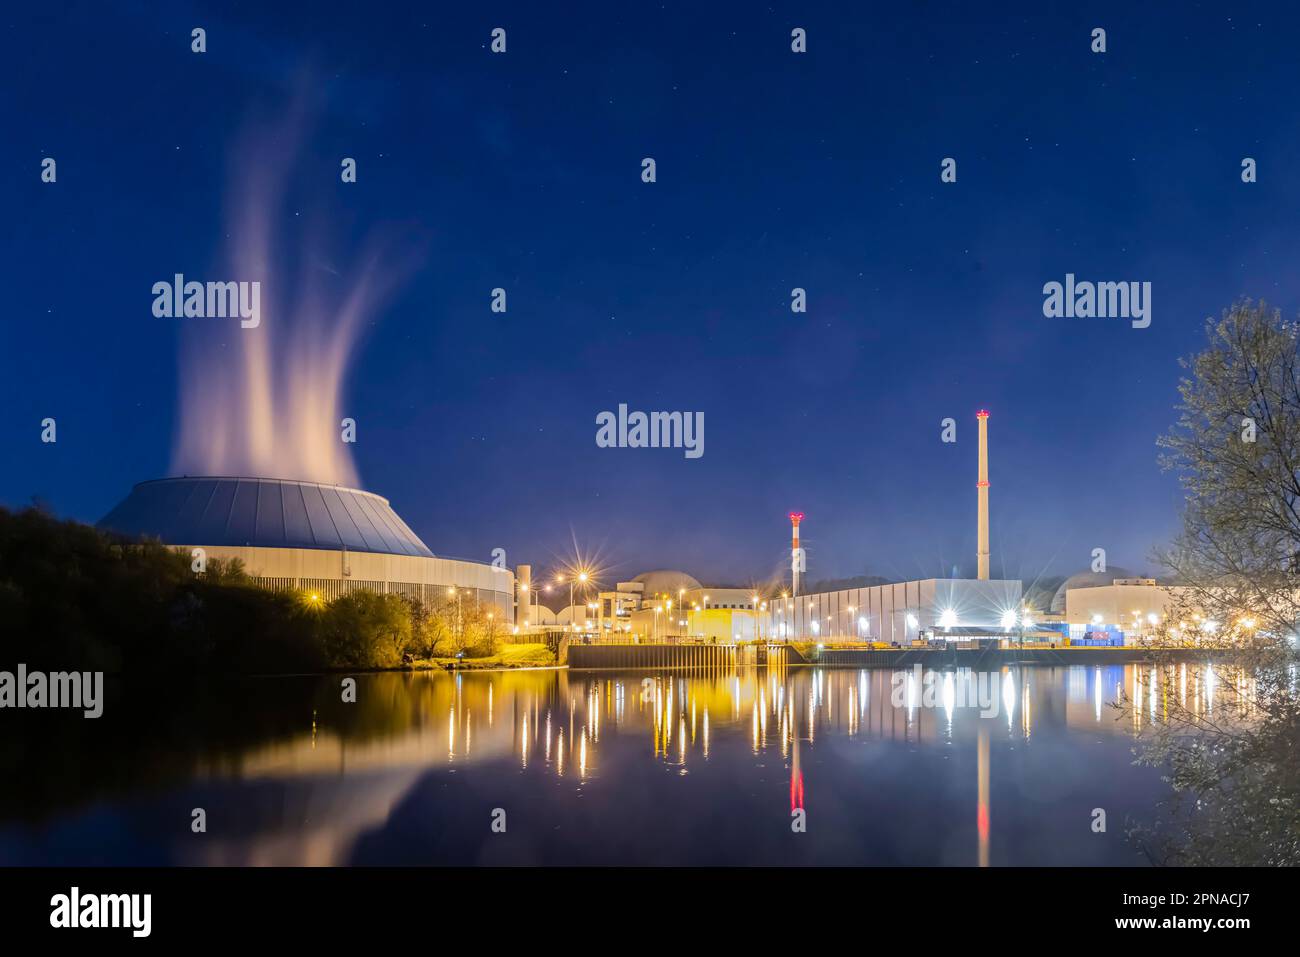 La centrale nucleare di Neckarwestheim va fuori linea, foto notturne con la costruzione del reattore, la torre di raffreddamento e il fiume Neckar, il reattore GKN 2 è uno dei Foto Stock